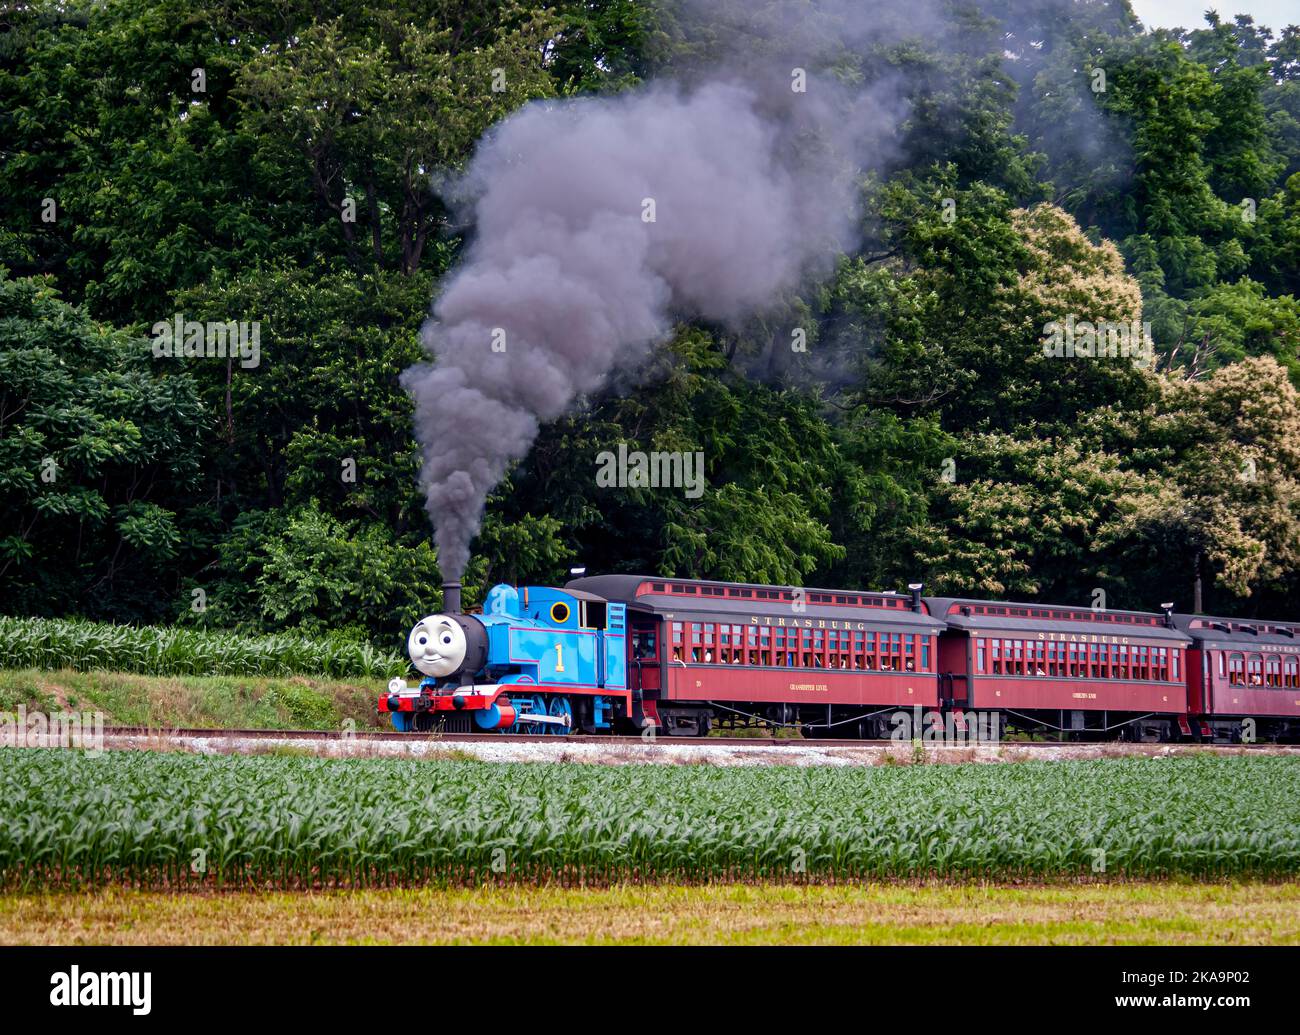 Strasburg, Pennsylvanie. 48 juin 2021 - vue de Thomas le train tirant des voitures de passagers soufflant de la fumée et de la vapeur lors d'une journée ensoleillée Banque D'Images